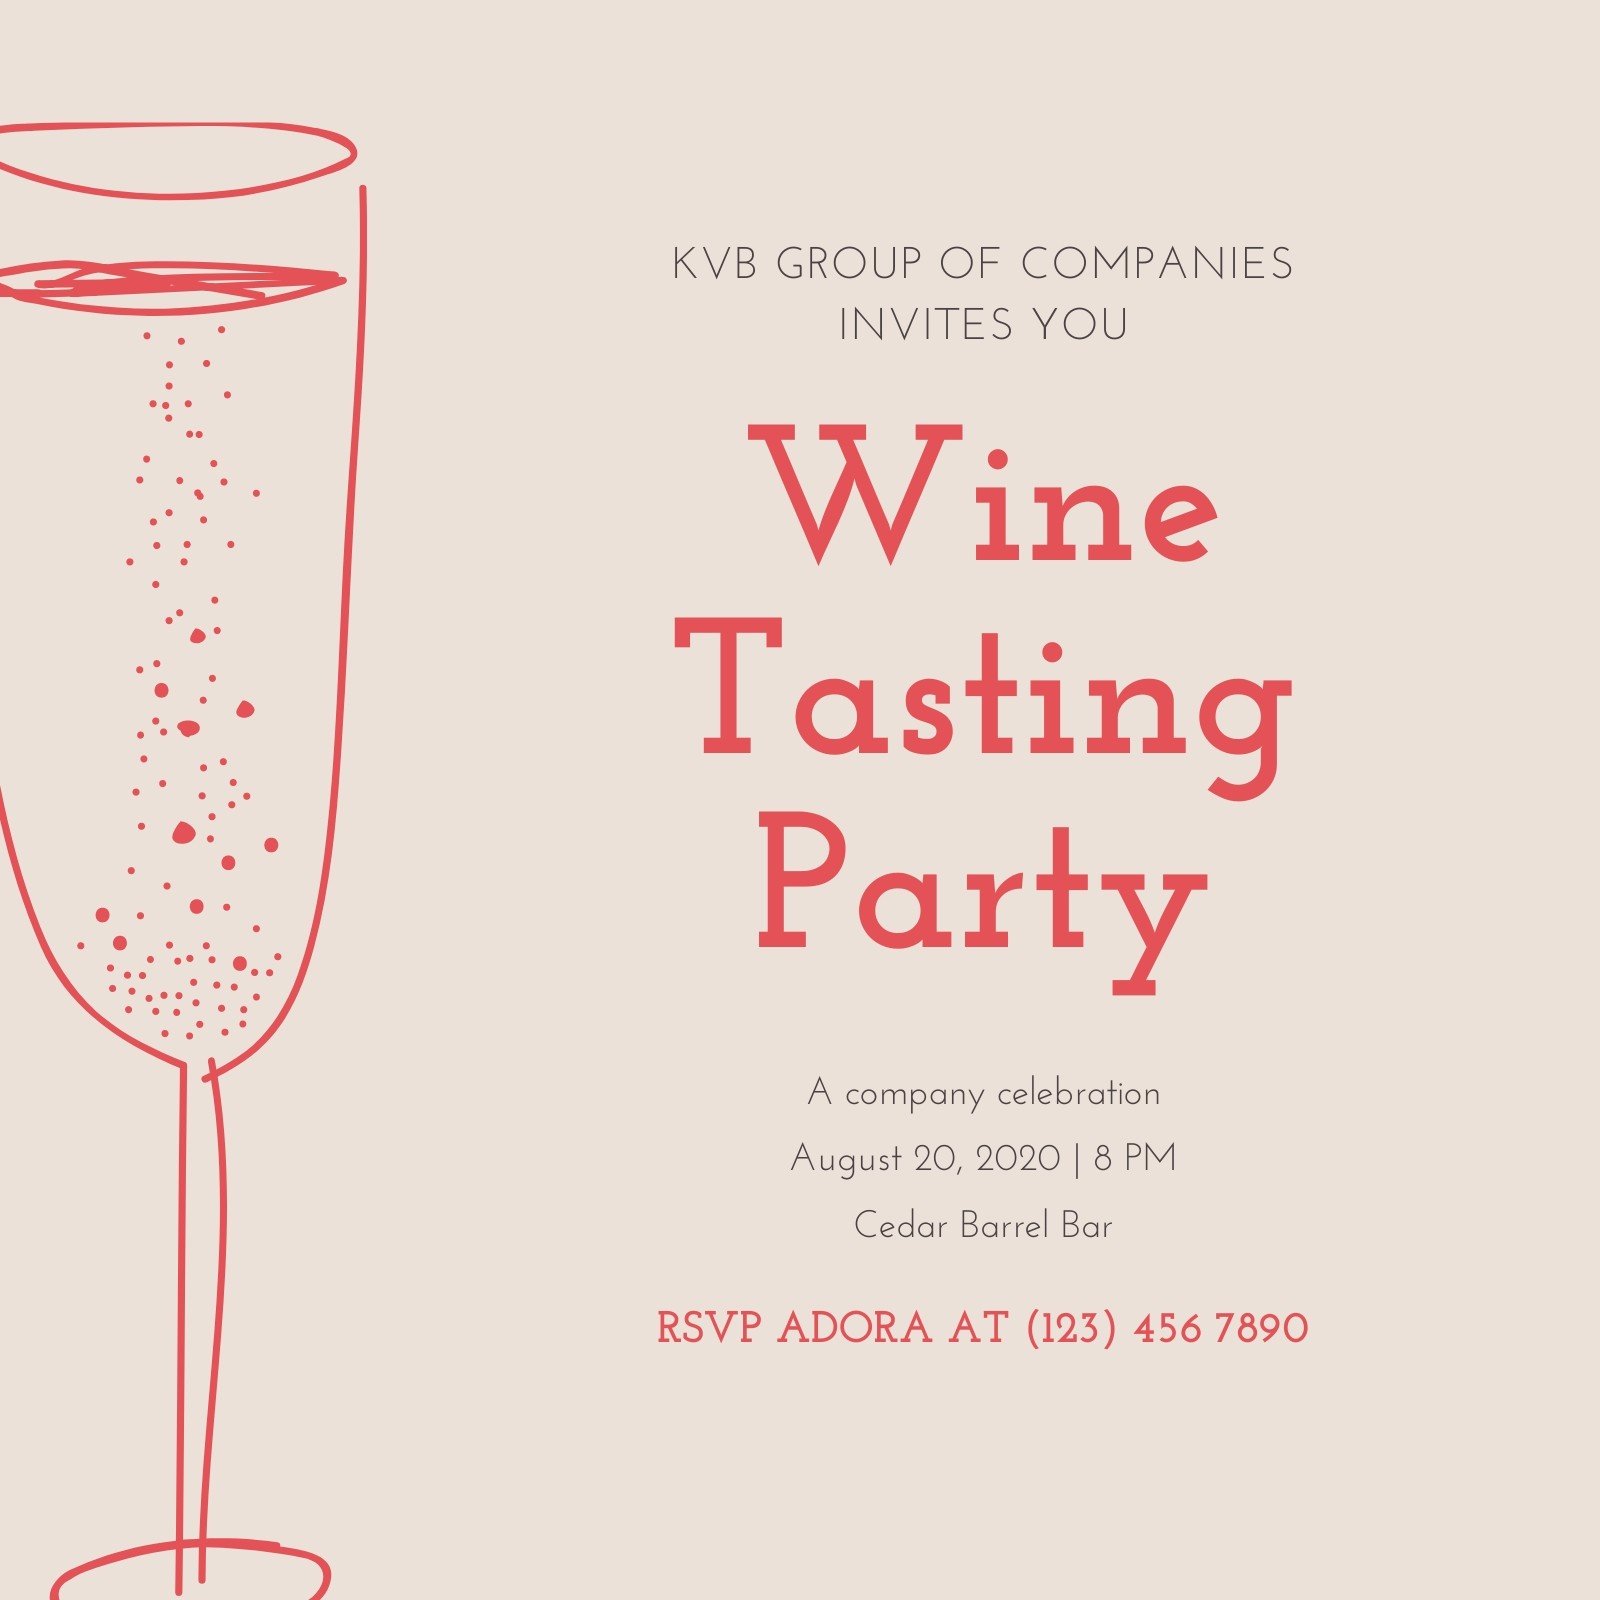 wine tasting event invitation